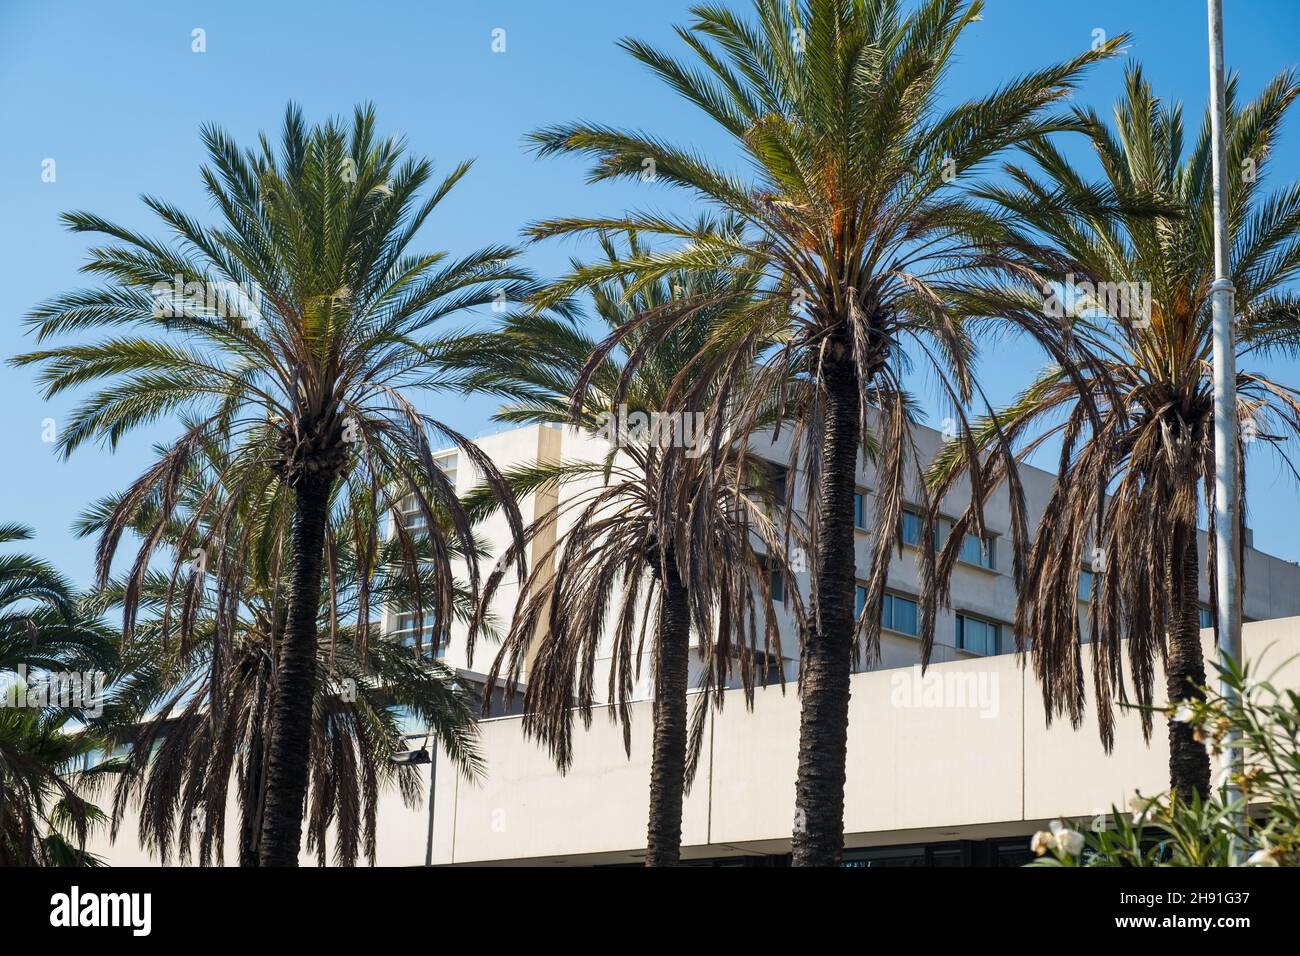 Cielo azul perfecto, palmeras verdes, día soleado y la construcción en el fondo. Foto de stock